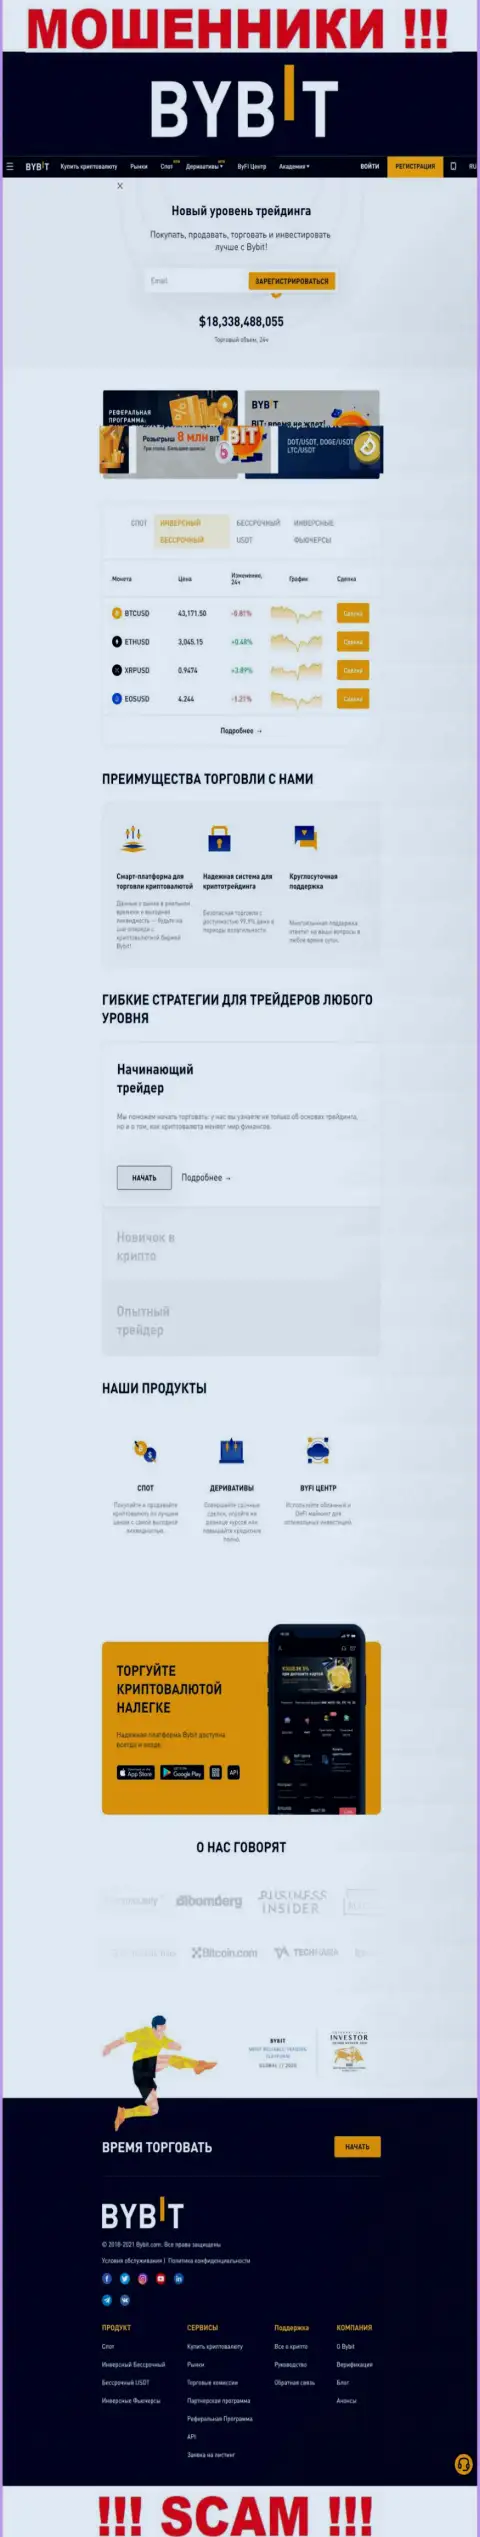 Главная страница официального веб-сервиса кидал БайБит